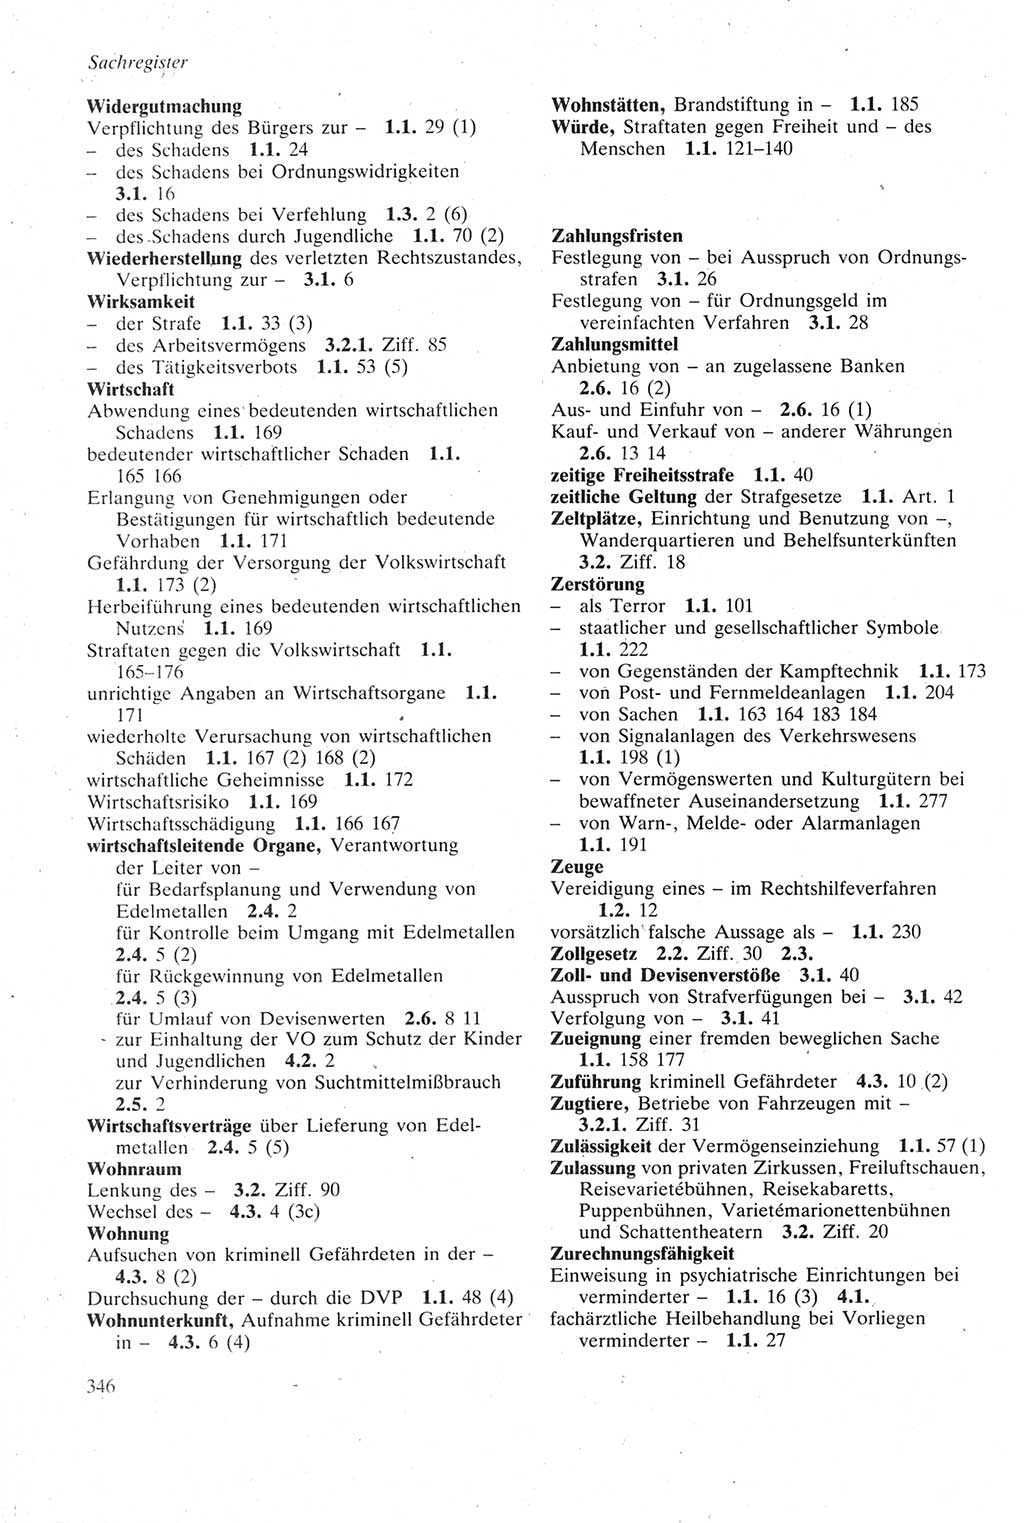 Strafgesetzbuch (StGB) der Deutschen Demokratischen Republik (DDR) sowie angrenzende Gesetze und Bestimmungen 1979, Seite 346 (StGB DDR Ges. Best. 1979, S. 346)